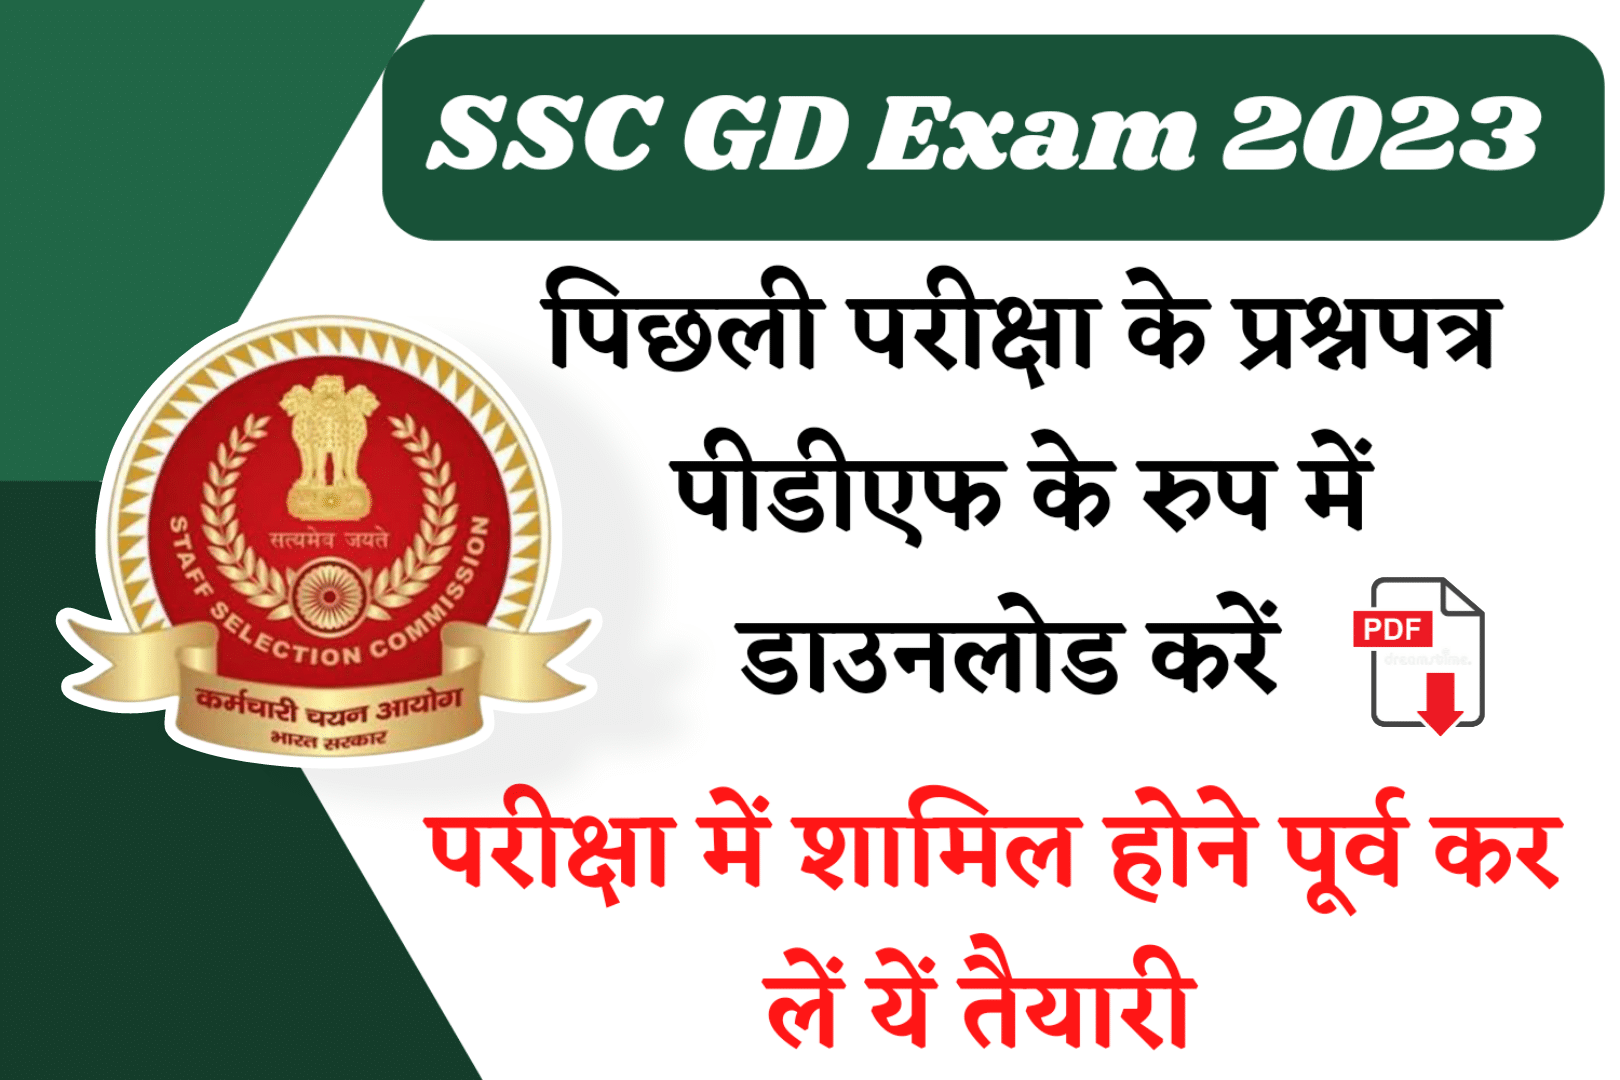 SSC GD Previous Year Paper PDF Download in Hindi : एसएससी जीडी परीक्षा विगत वर्ष के प्रश्नपत्र हिंदी में पीडीएफ के रुप में डाउनलोड करें